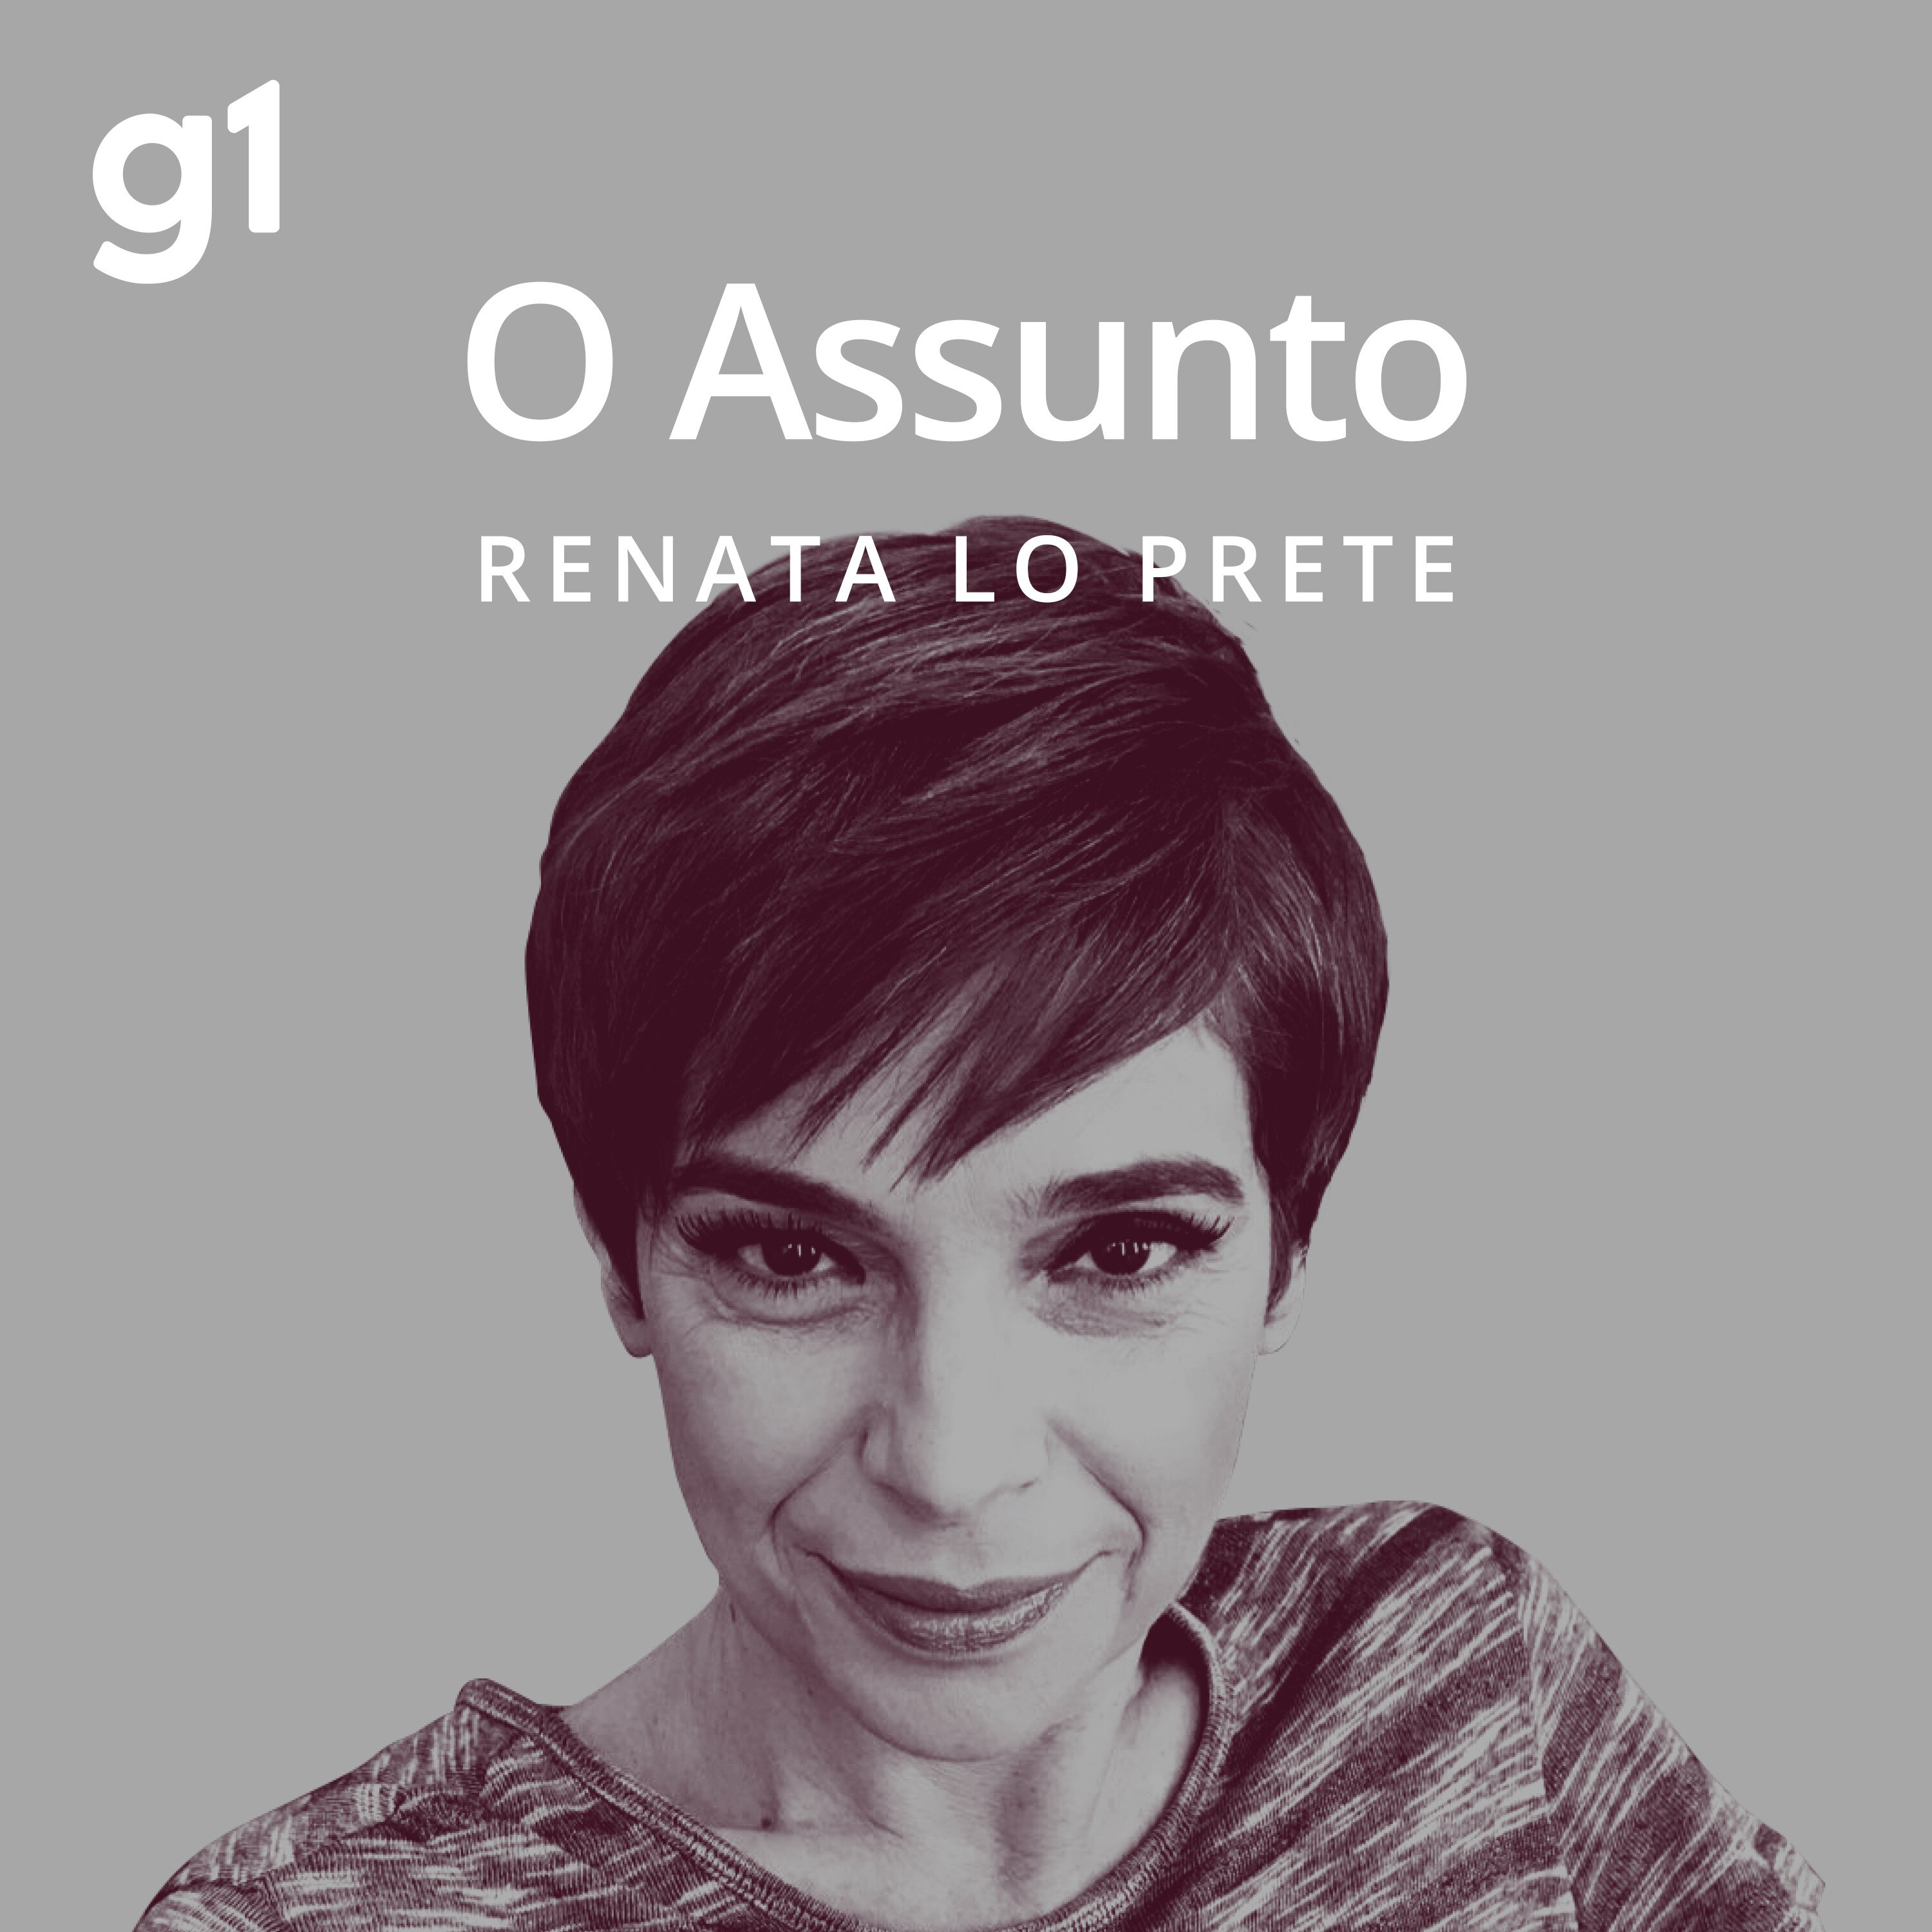 Renata Lo Prete se despede de O Assunto